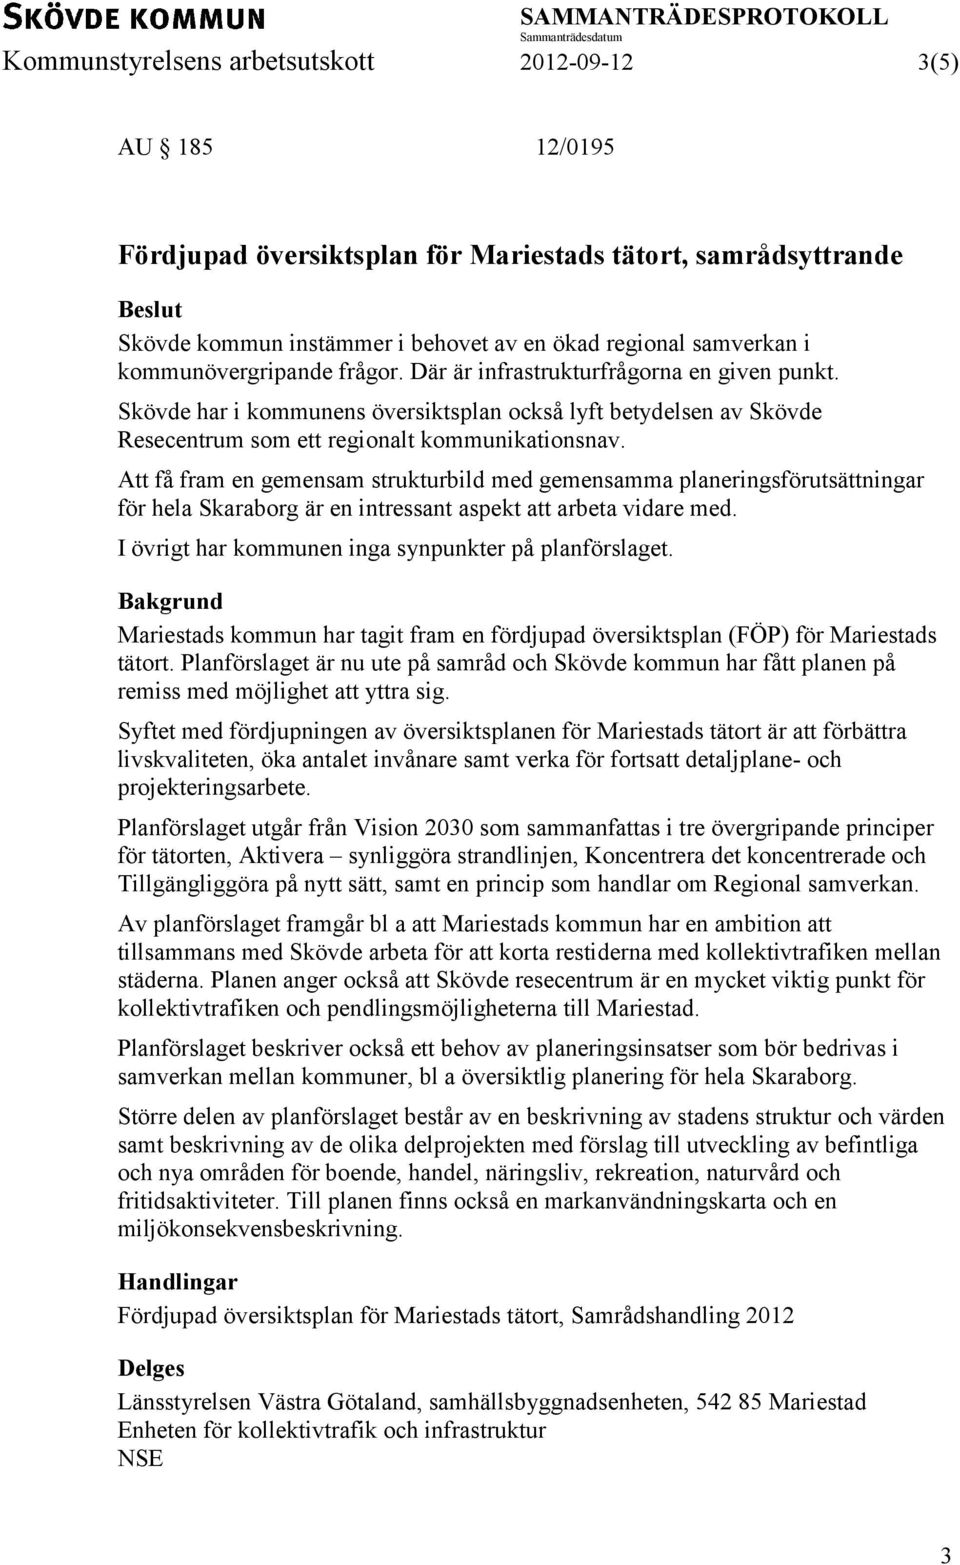 Att få fram en gemensam strukturbild med gemensamma planeringsförutsättningar för hela Skaraborg är en intressant aspekt att arbeta vidare med. I övrigt har kommunen inga synpunkter på planförslaget.